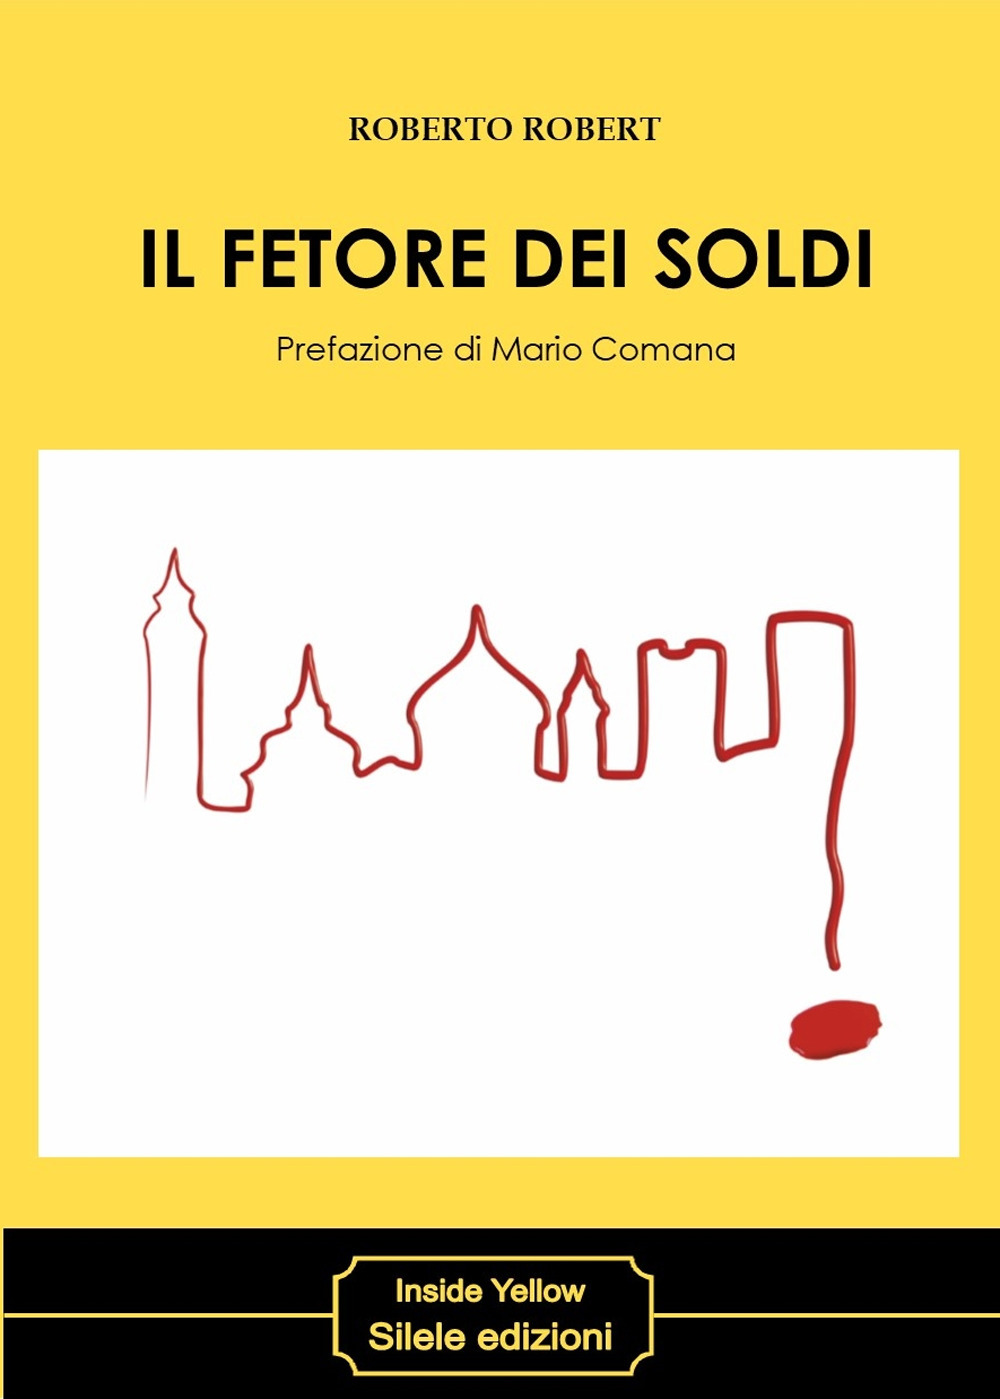 Libri Roberto Robert - Il Fetore Dei Soldi NUOVO SIGILLATO, EDIZIONE DEL 01/10/2019 SUBITO DISPONIBILE